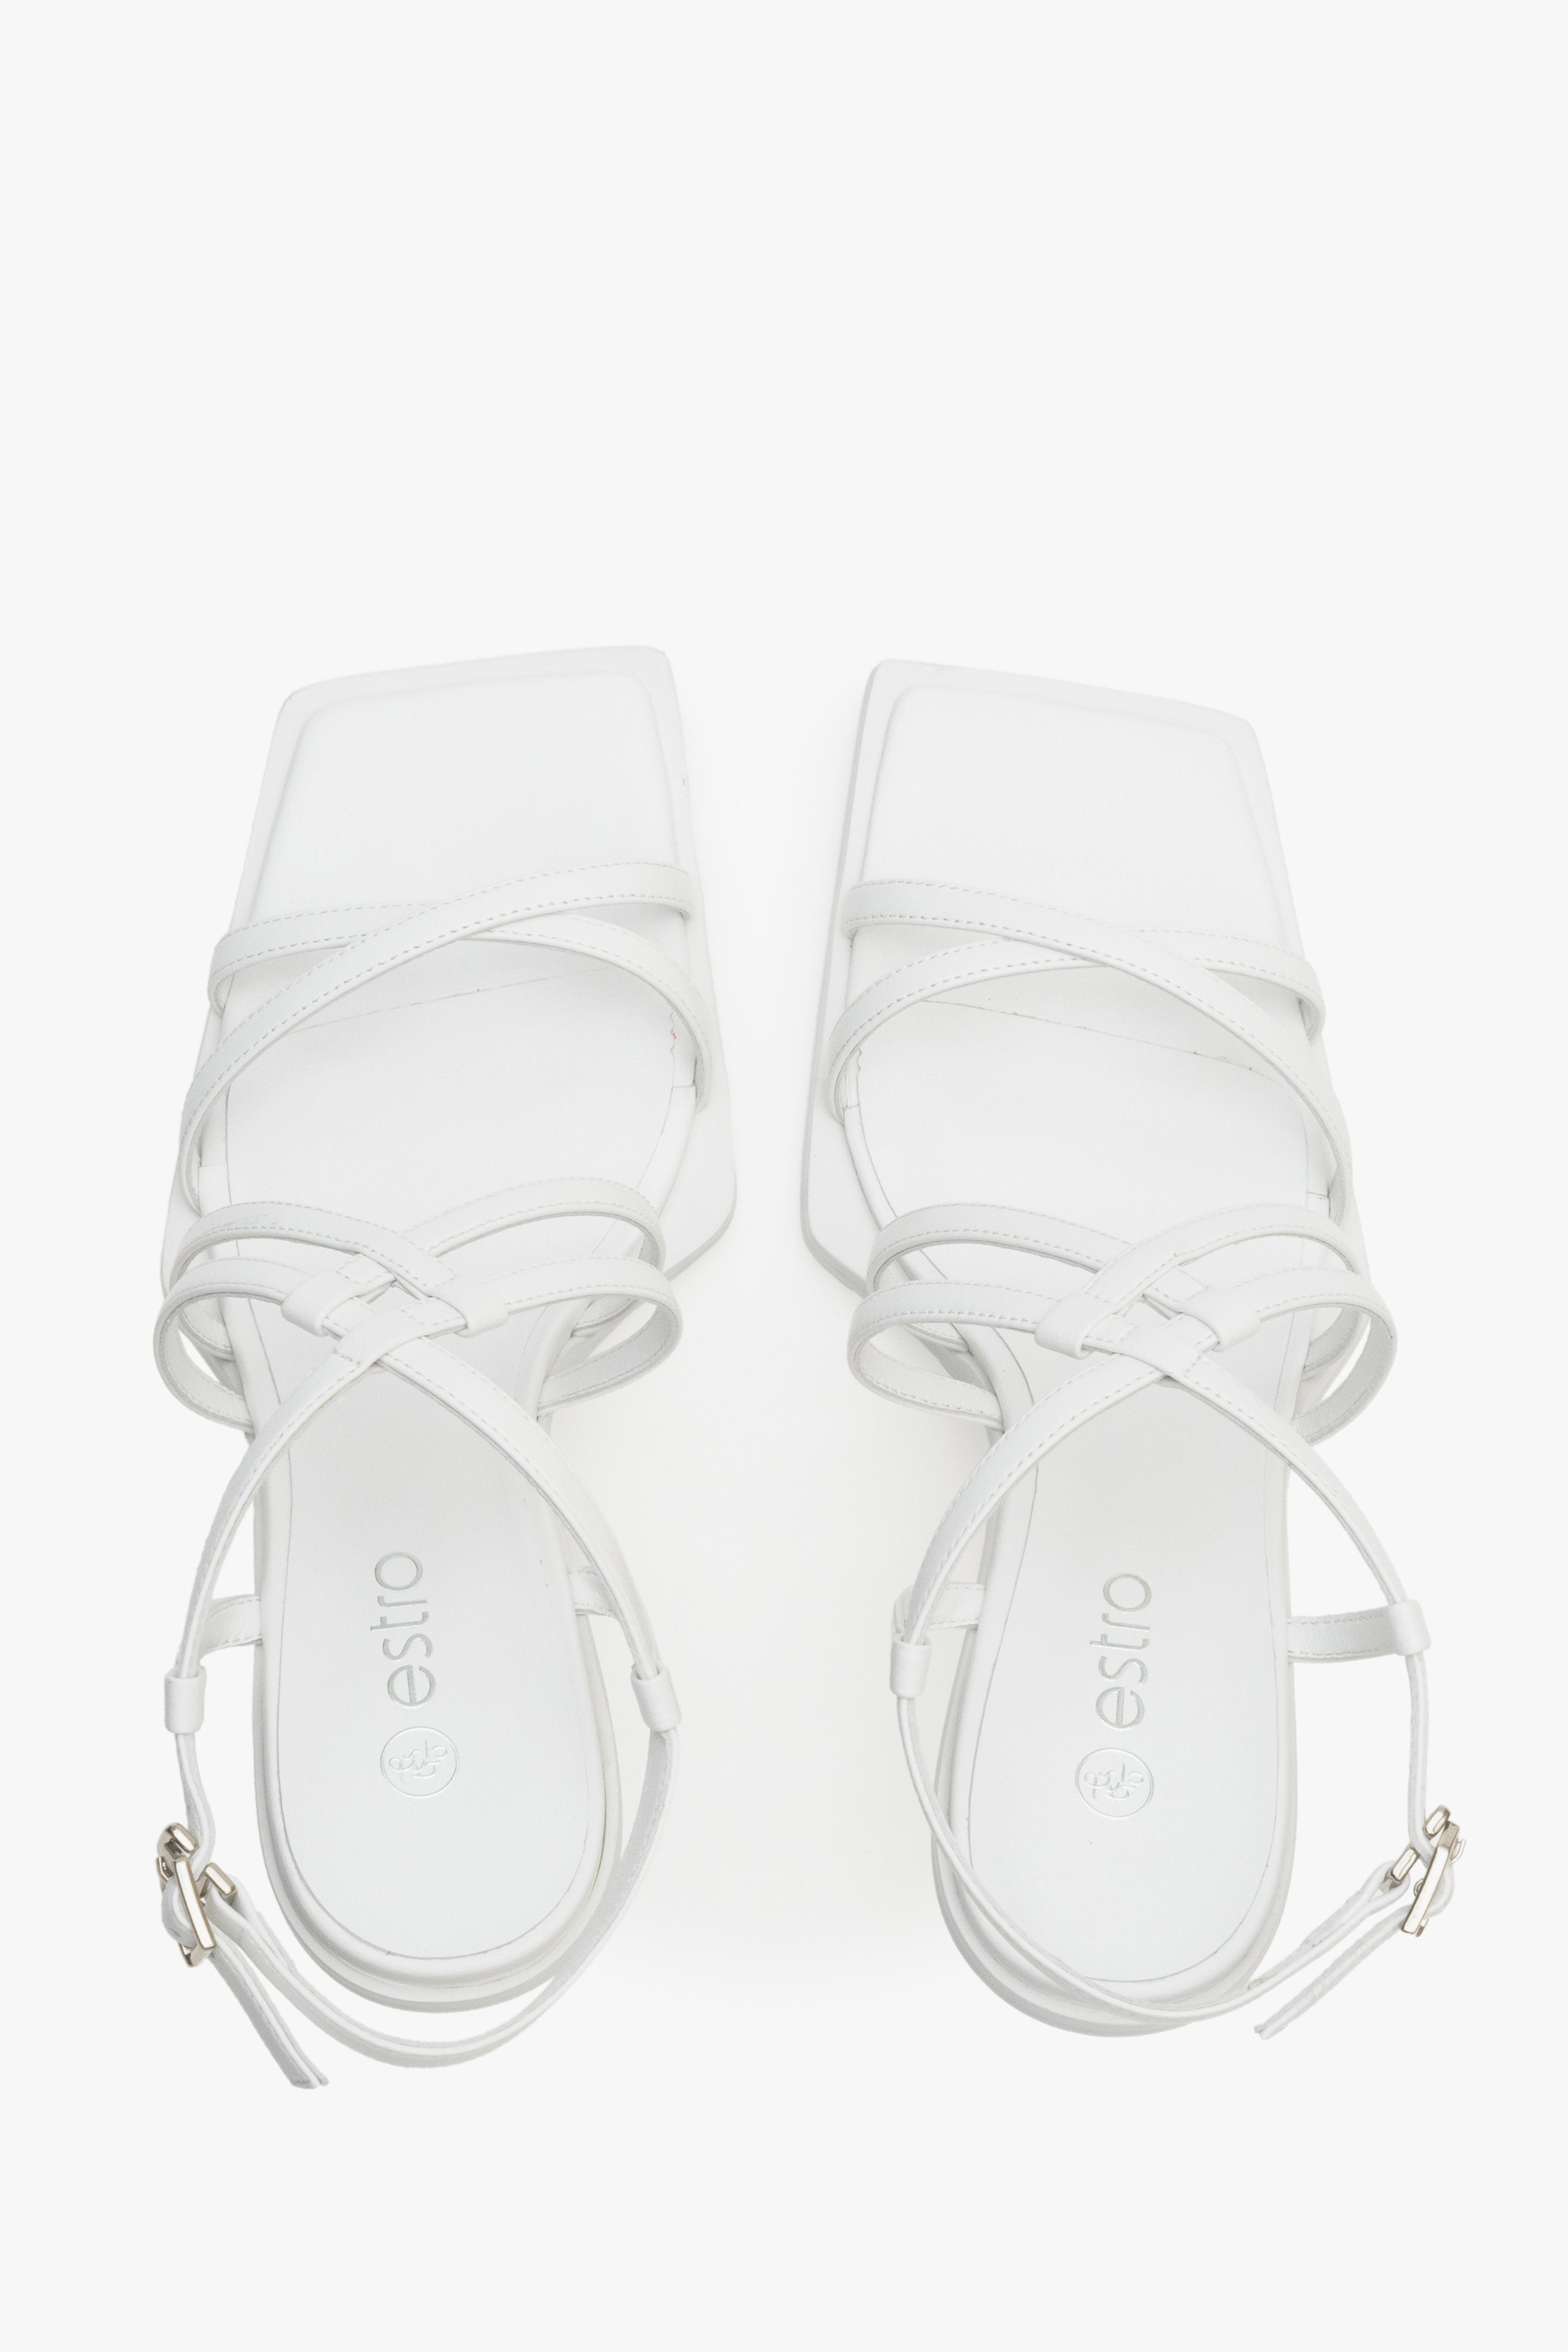 Damskie, skórzane sandały w kolorze białym Estro - prezentacja modelu z góry.